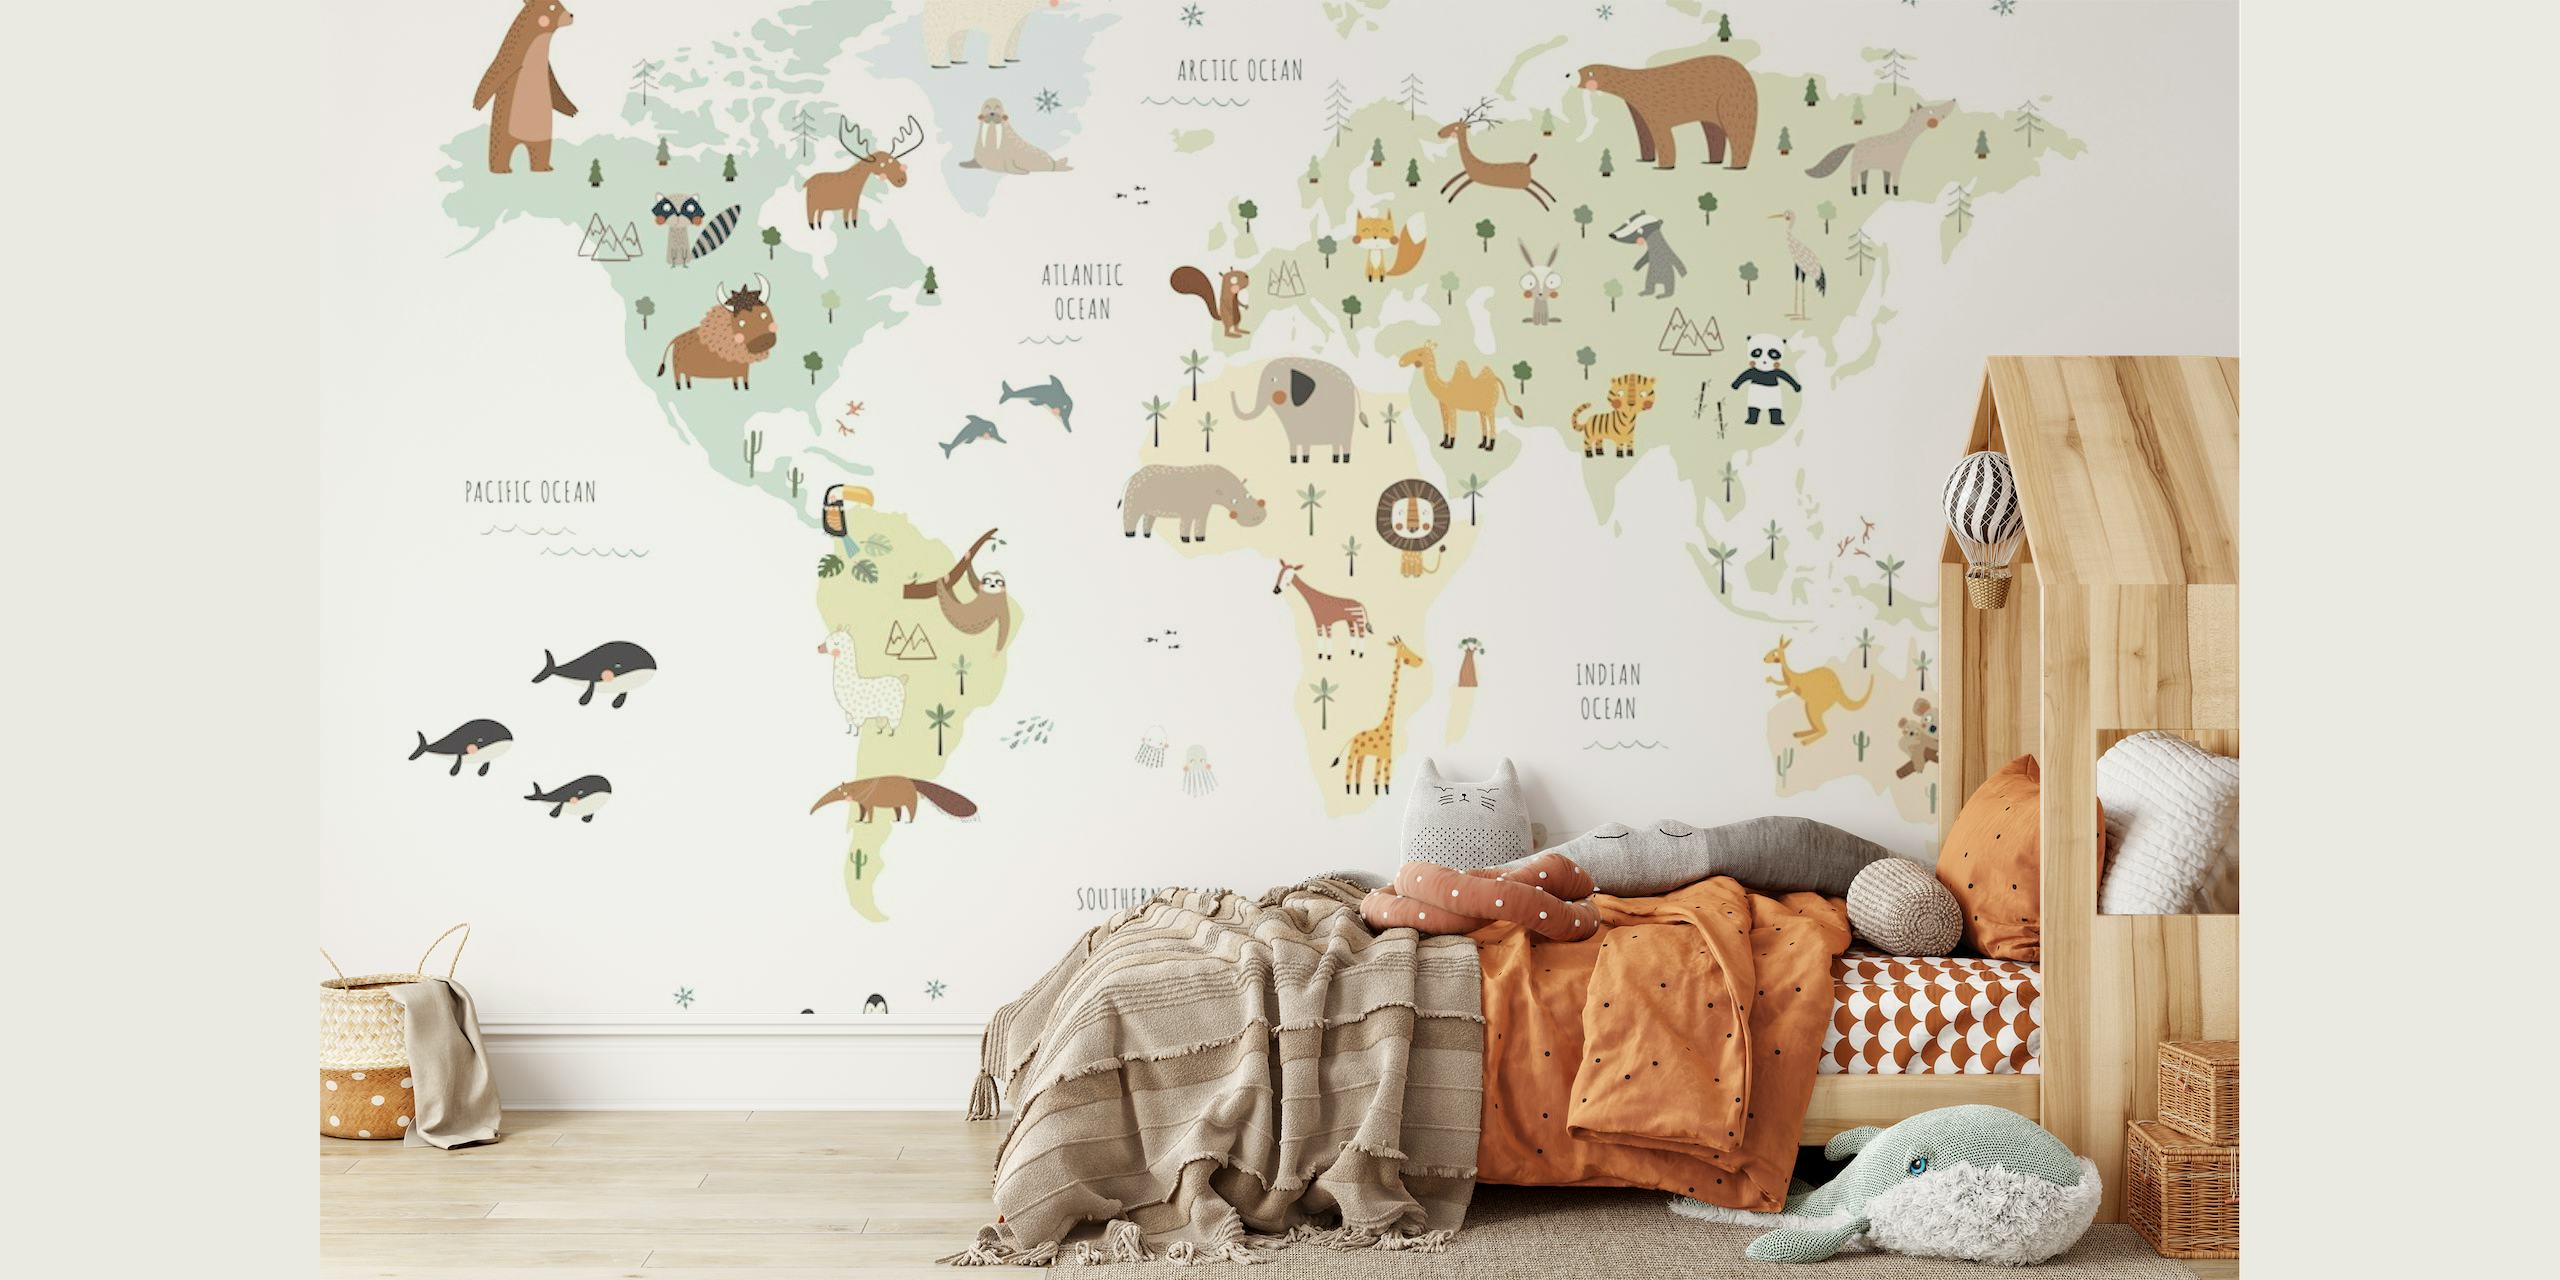 Carta da parati con mappa del mondo illustrata con animali colorati che rappresentano diverse regioni